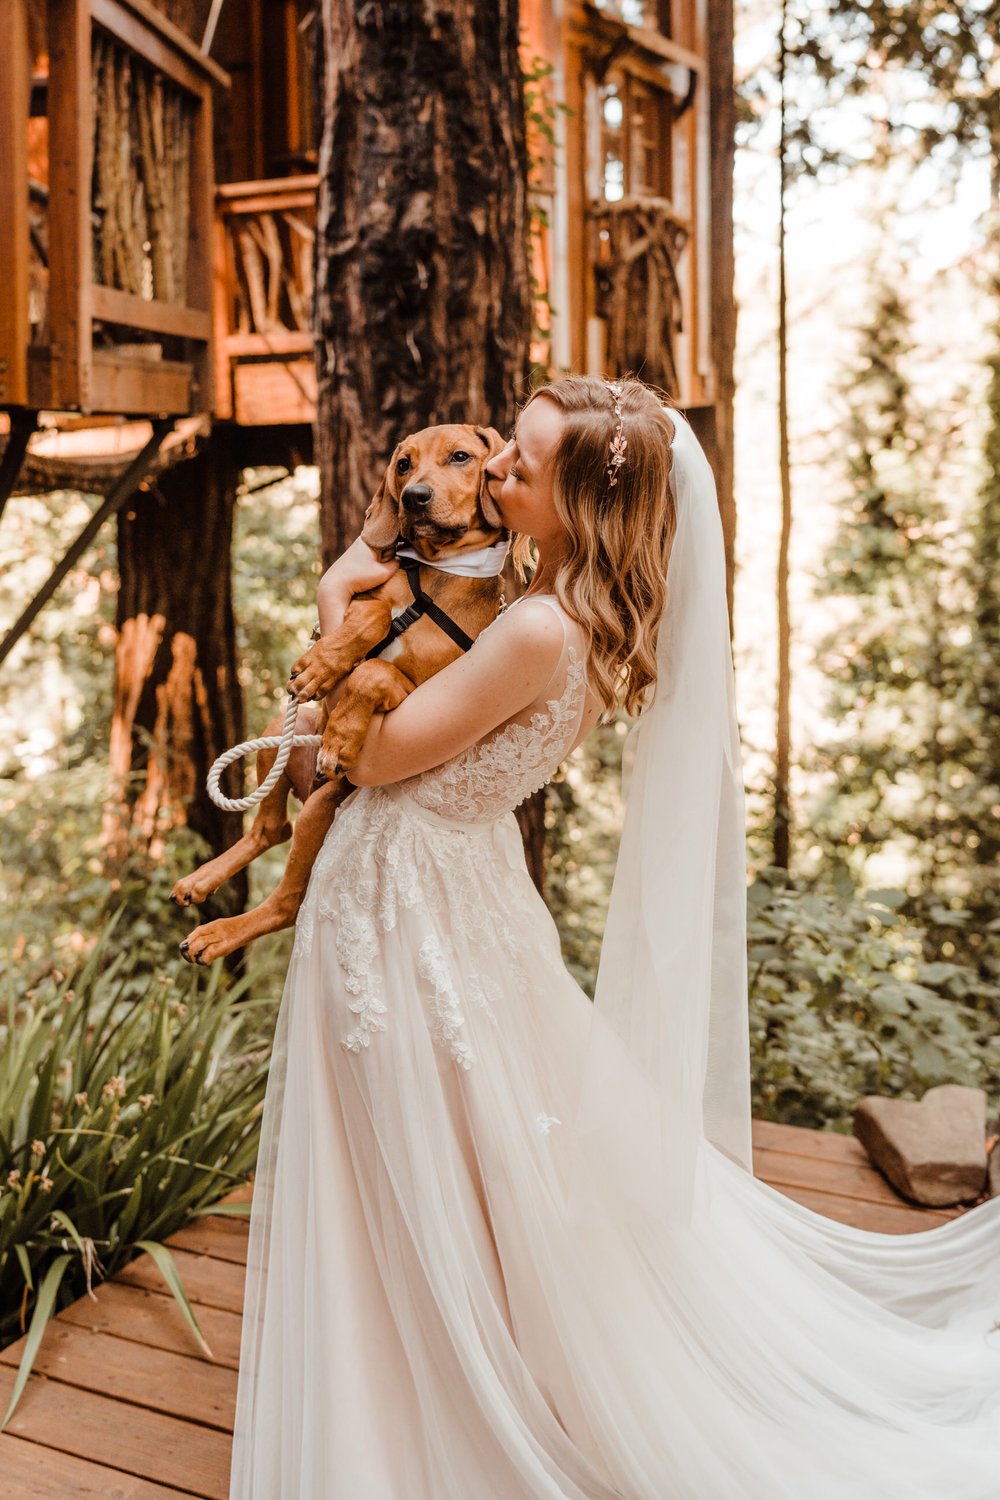 Wedding-in-the-Woods-Bloodhound-Puppy-in-Blue-Dog-Bowtie-with-Bride (2).jpg